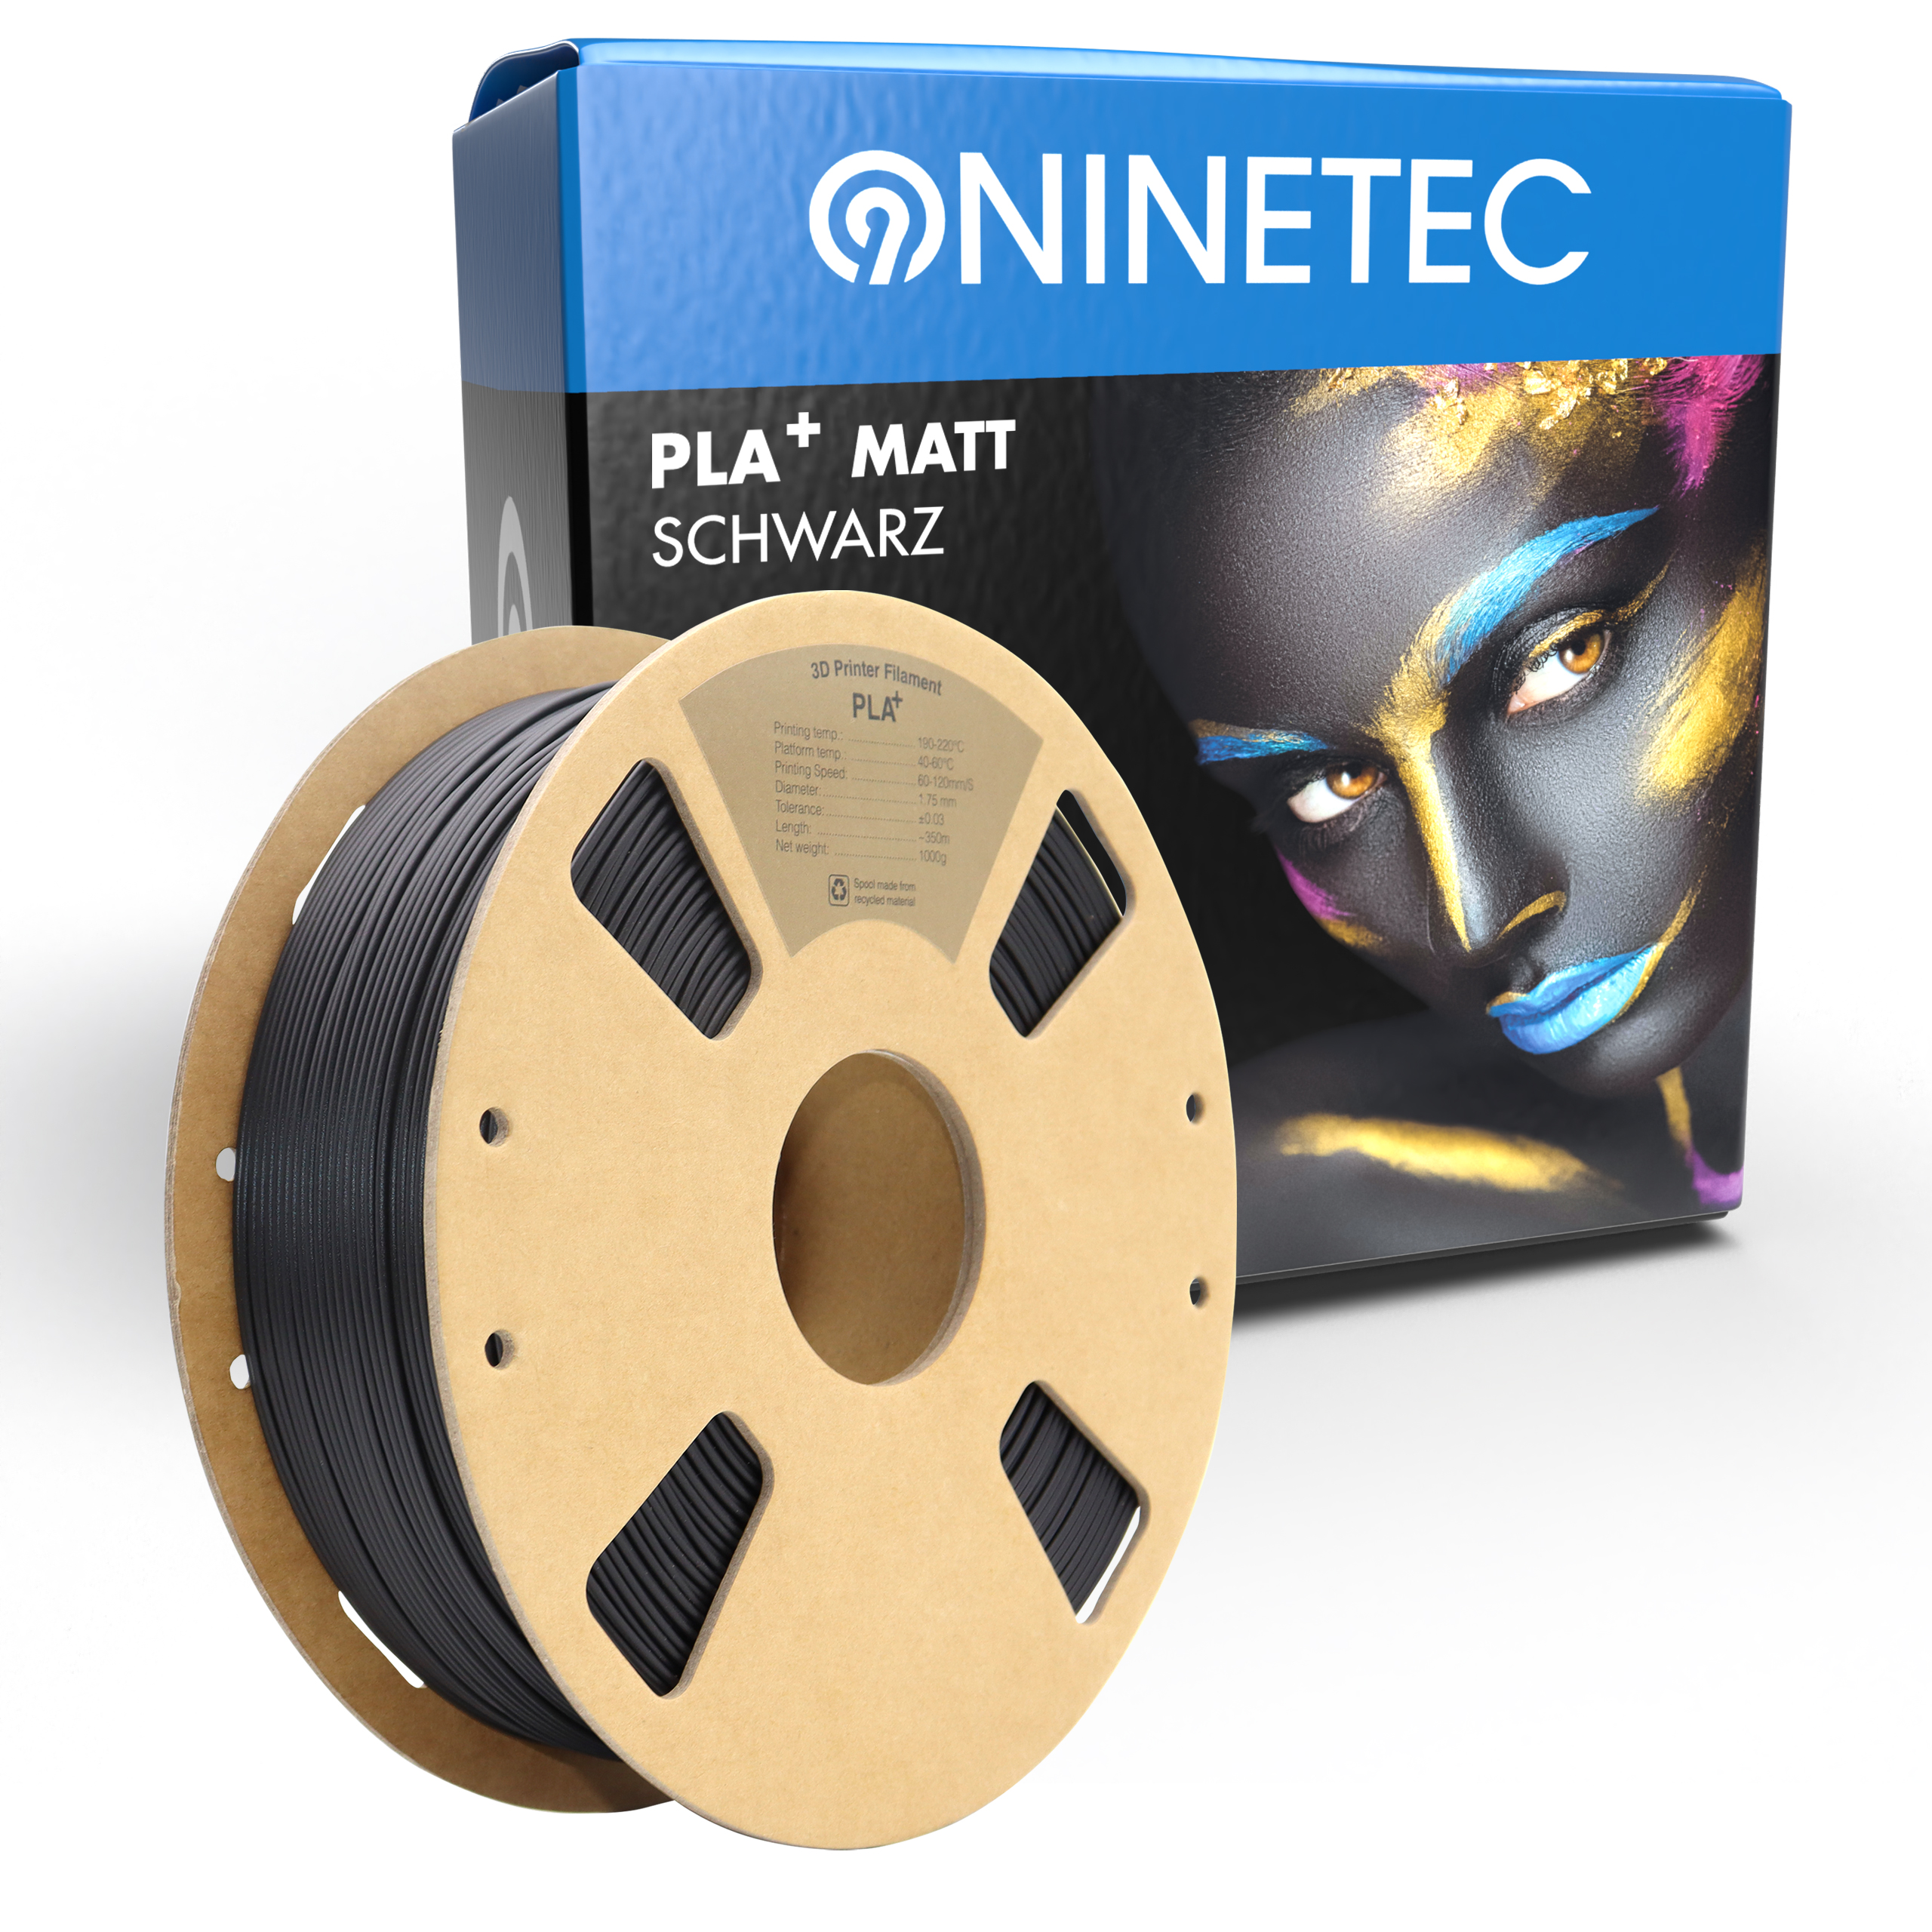 NINETEC PLA+ Filament Schwarz Matt